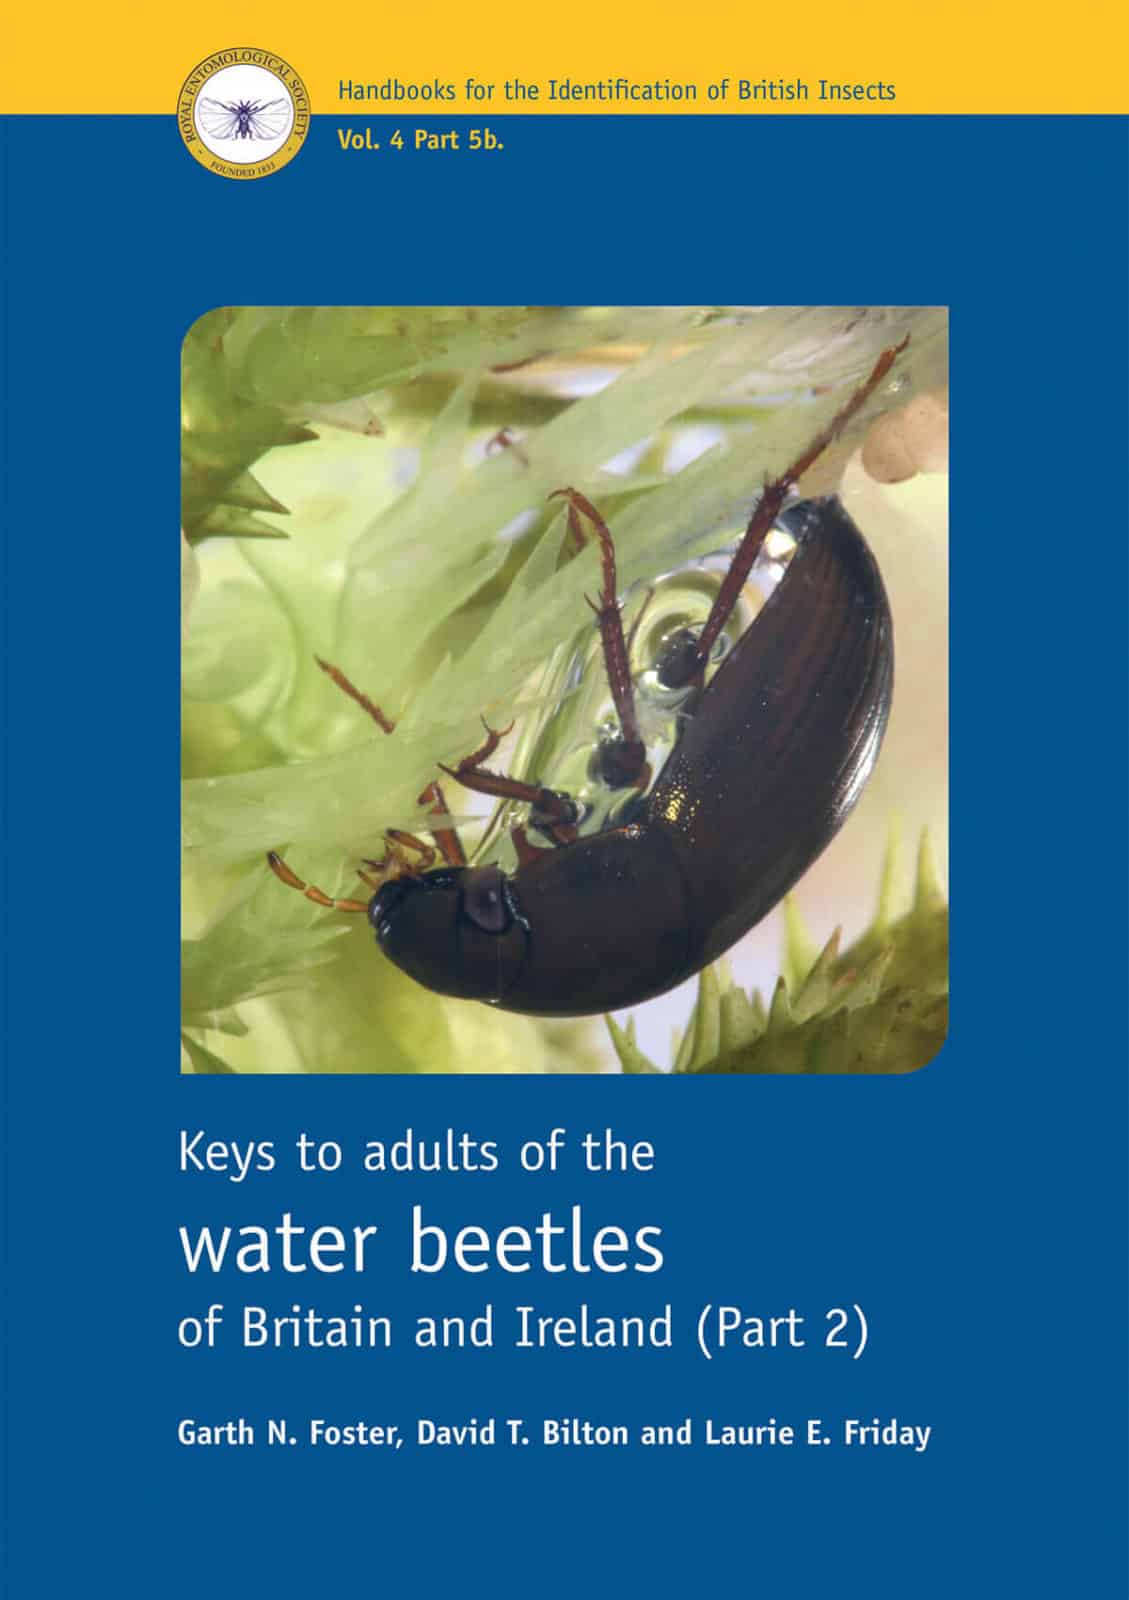 Water beetles